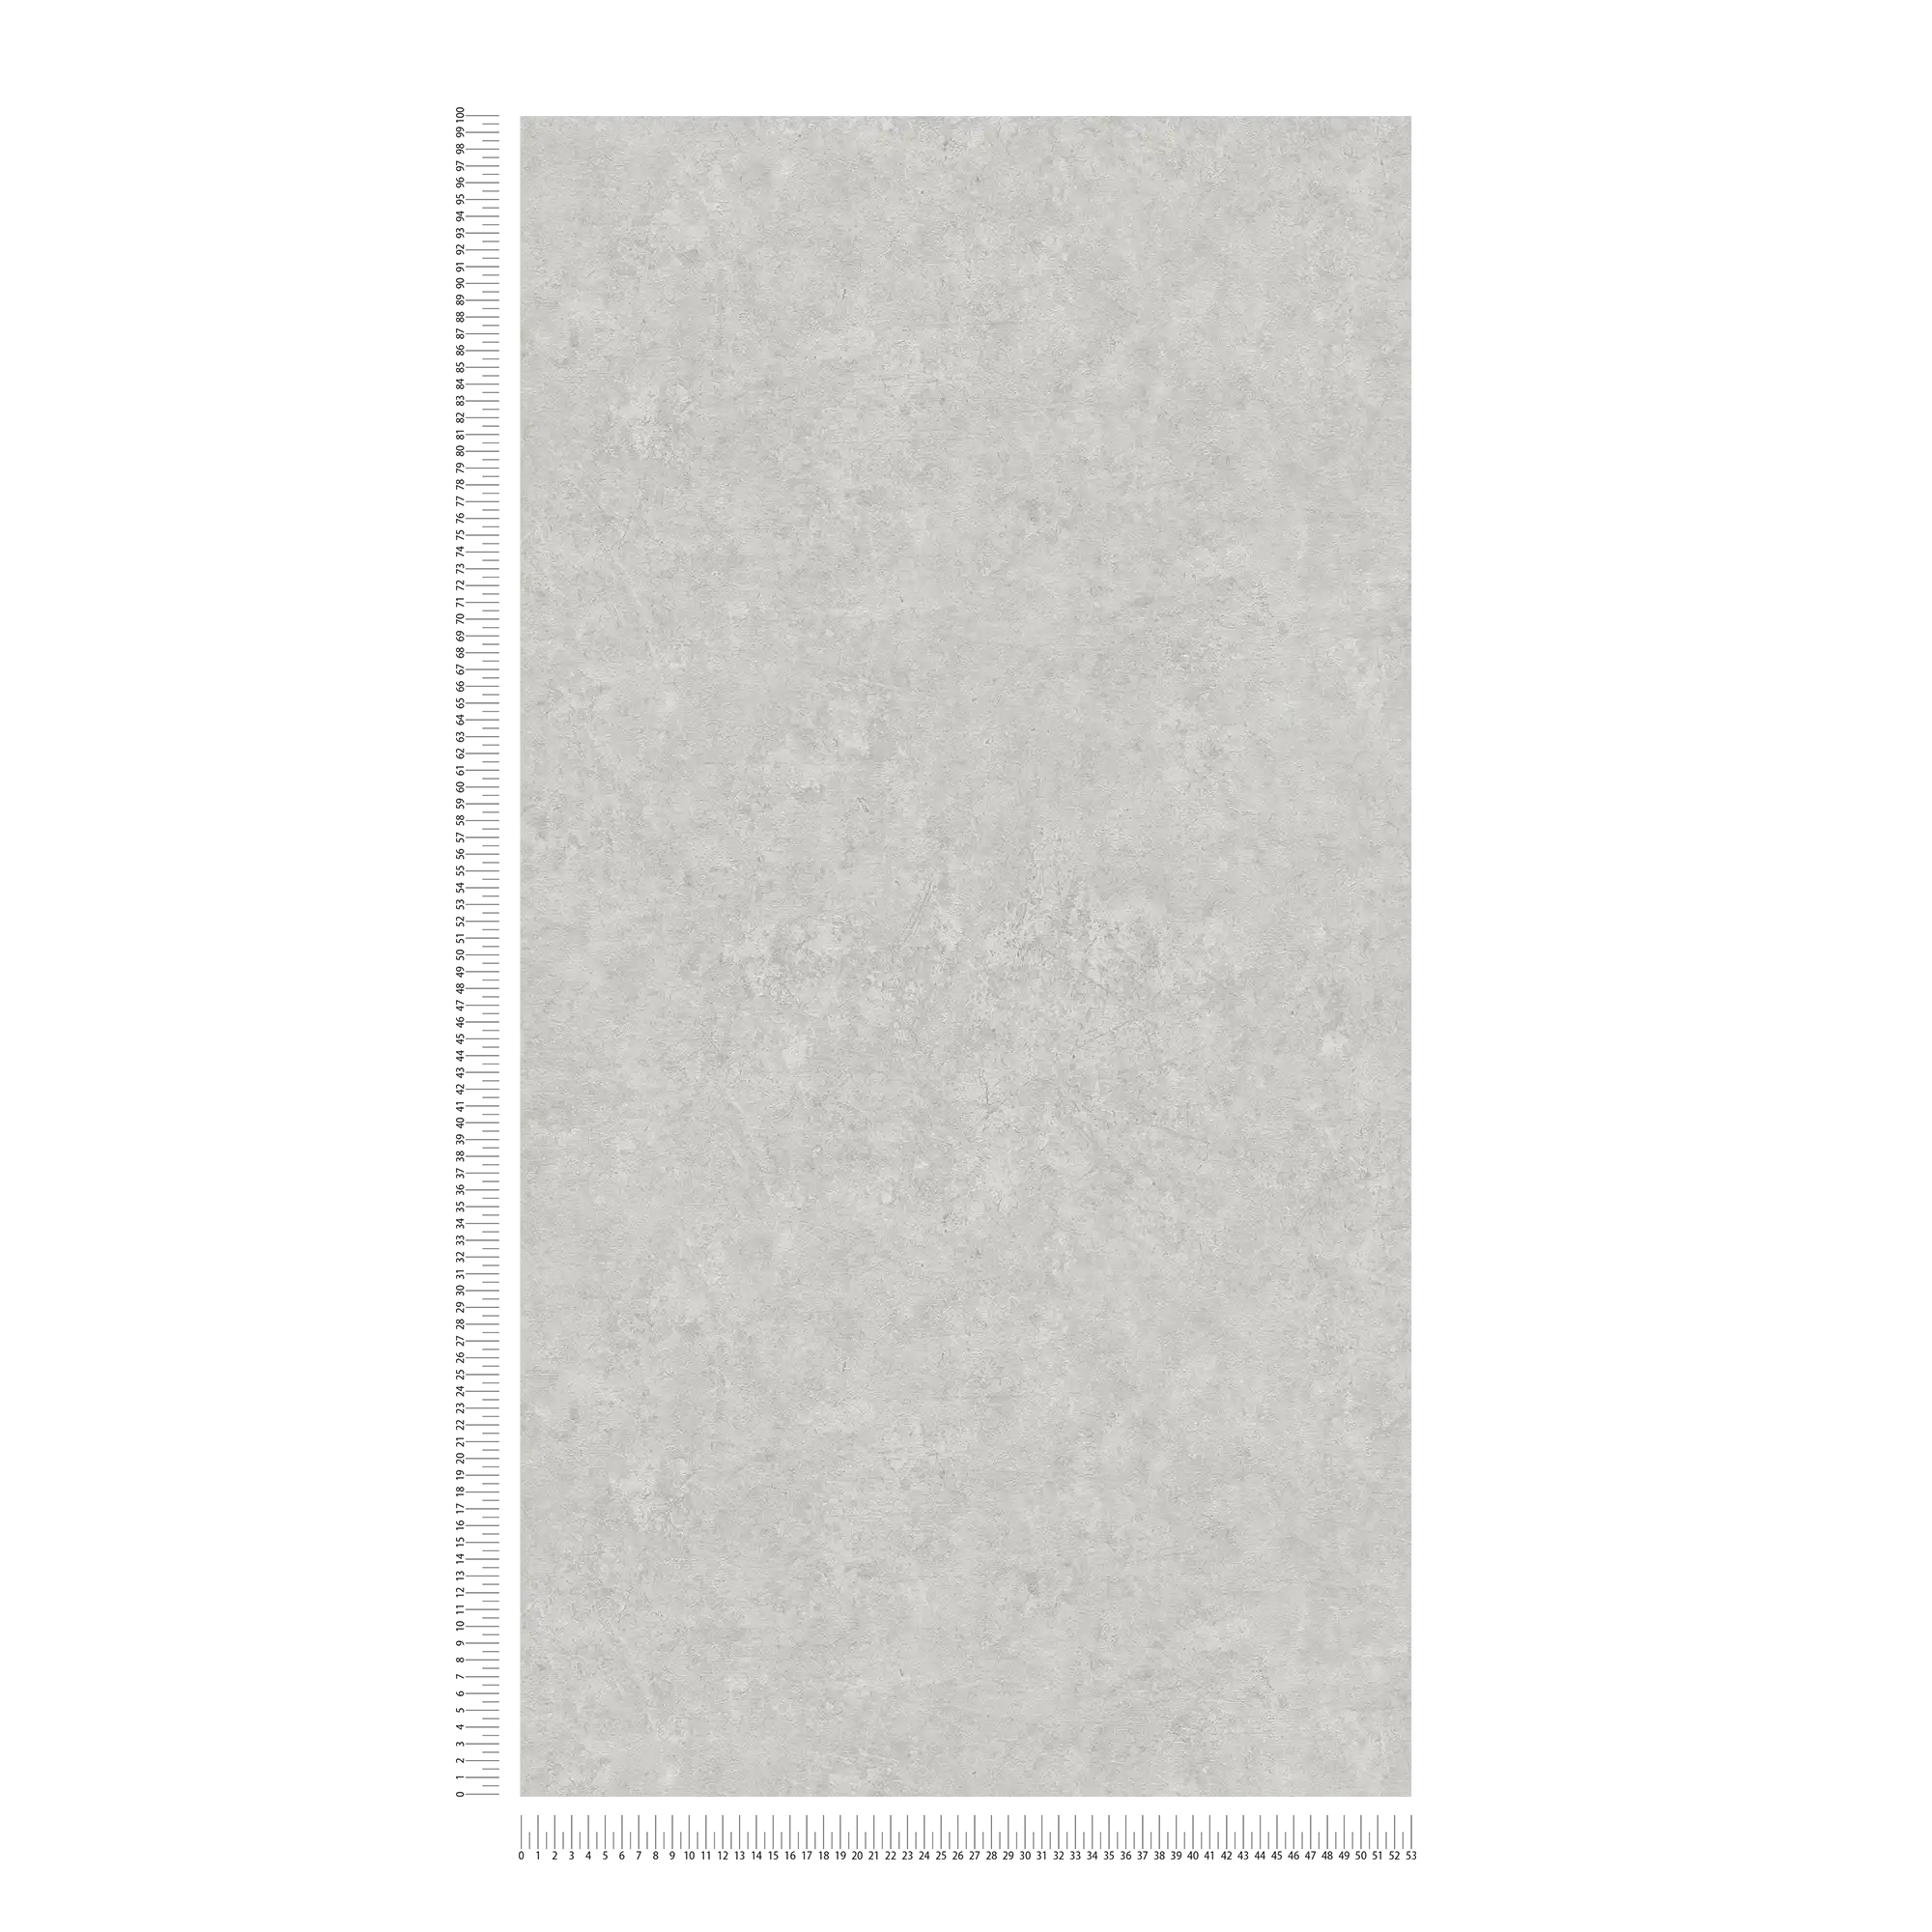             Betonoptik Vliestapete einfarbiges Muster – Grau
        